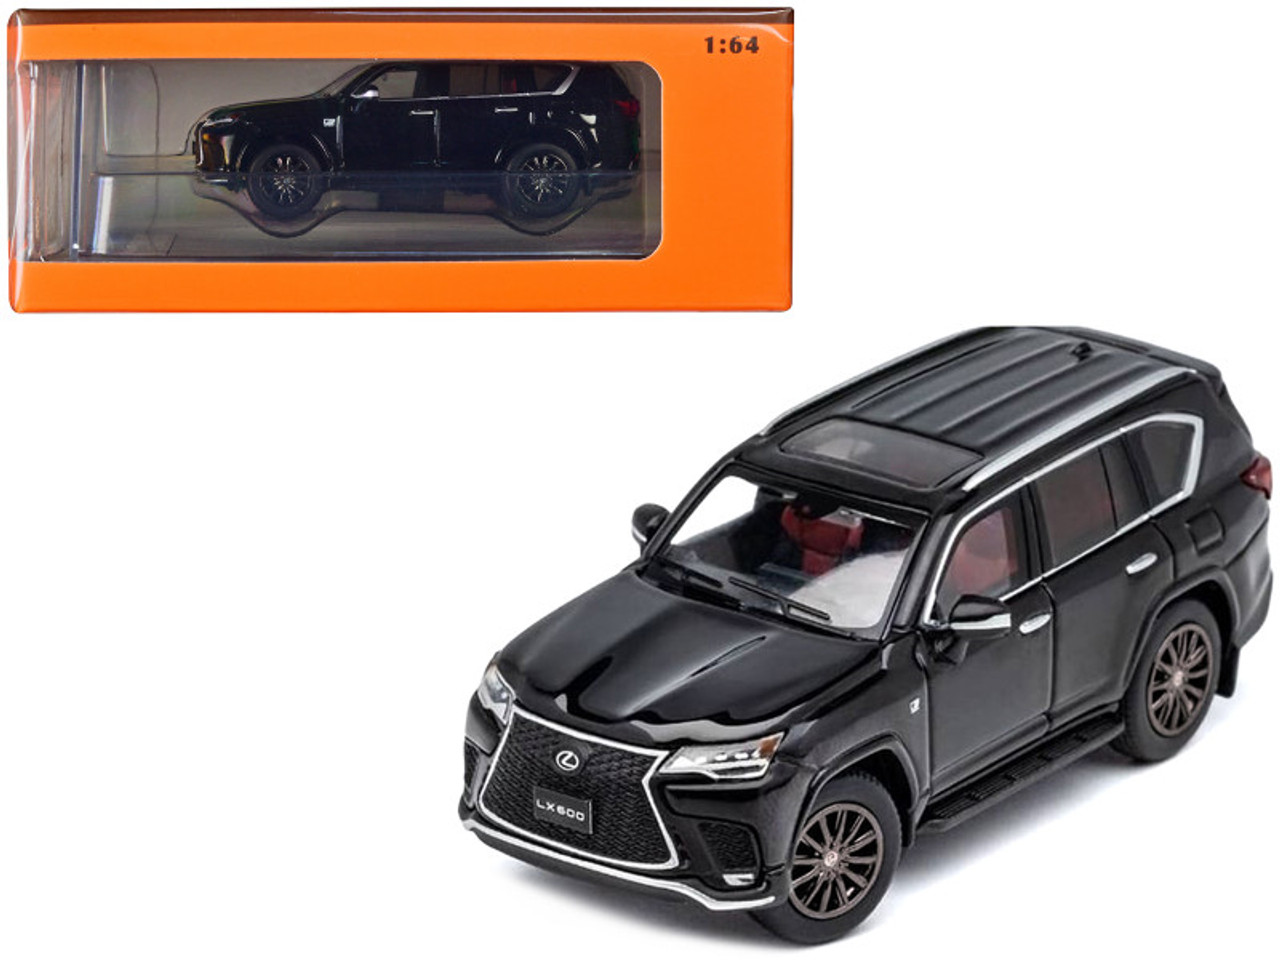 2021 Lexus LX 600 Black 1/64 Diecast Model Car by GCD